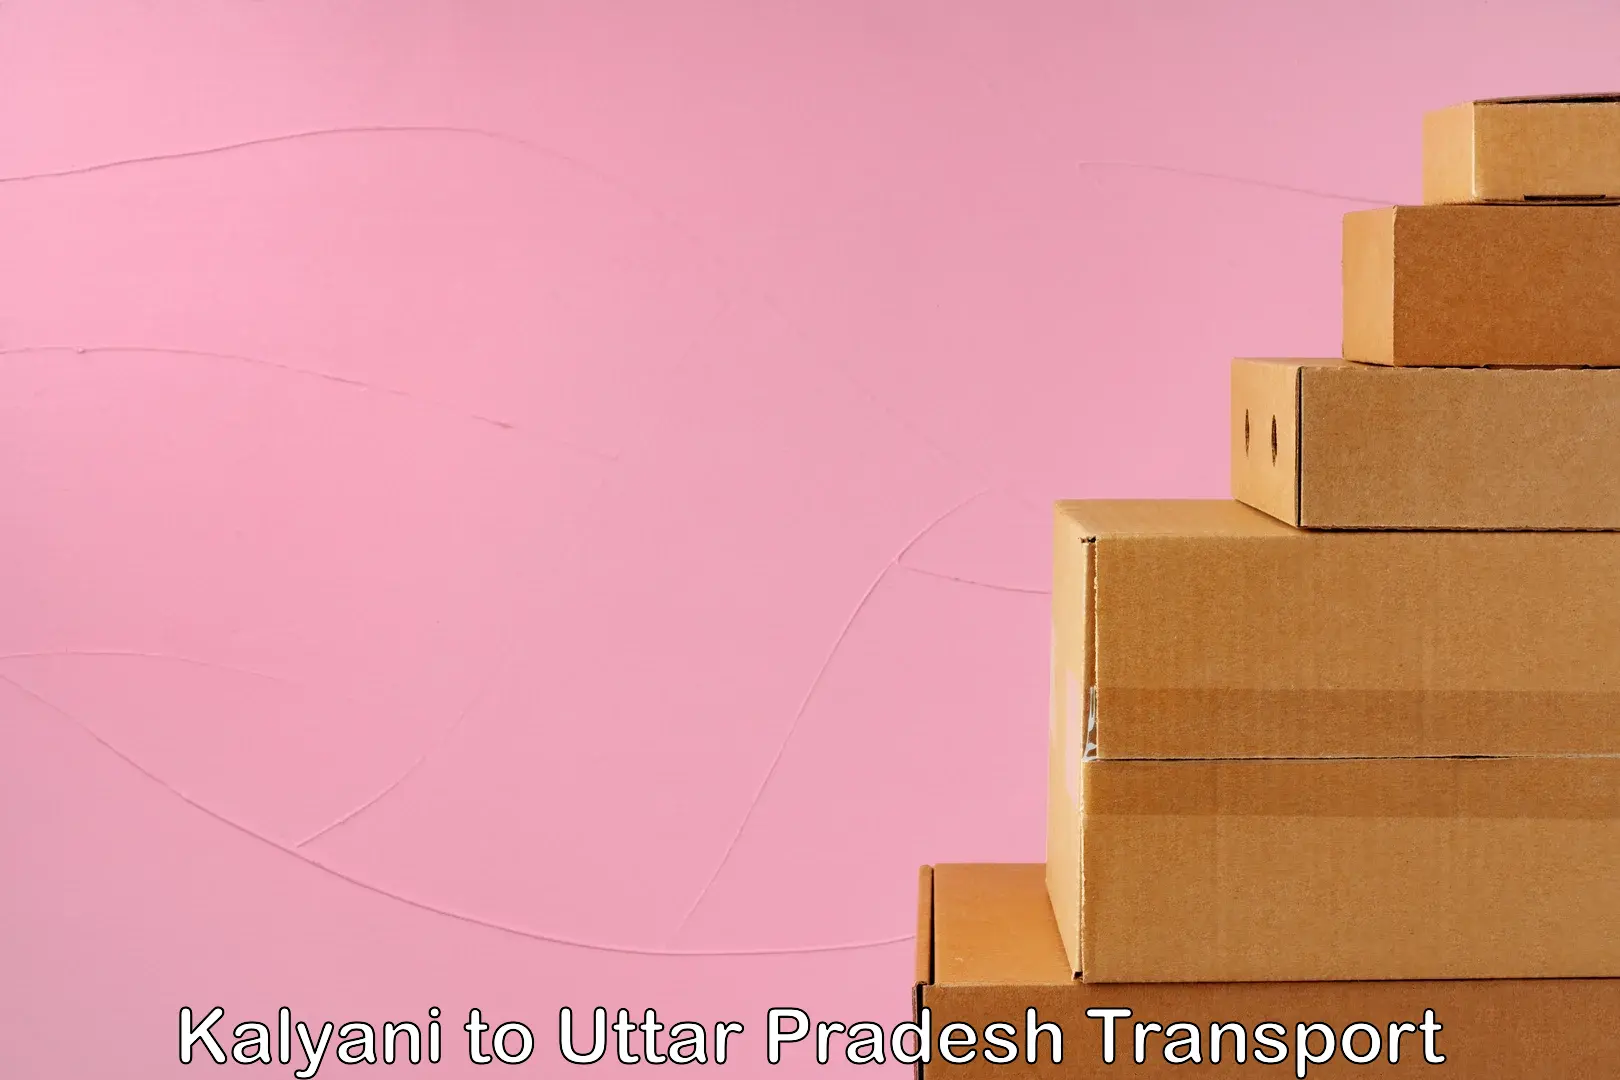 Land transport services in Kalyani to Uttar Pradesh